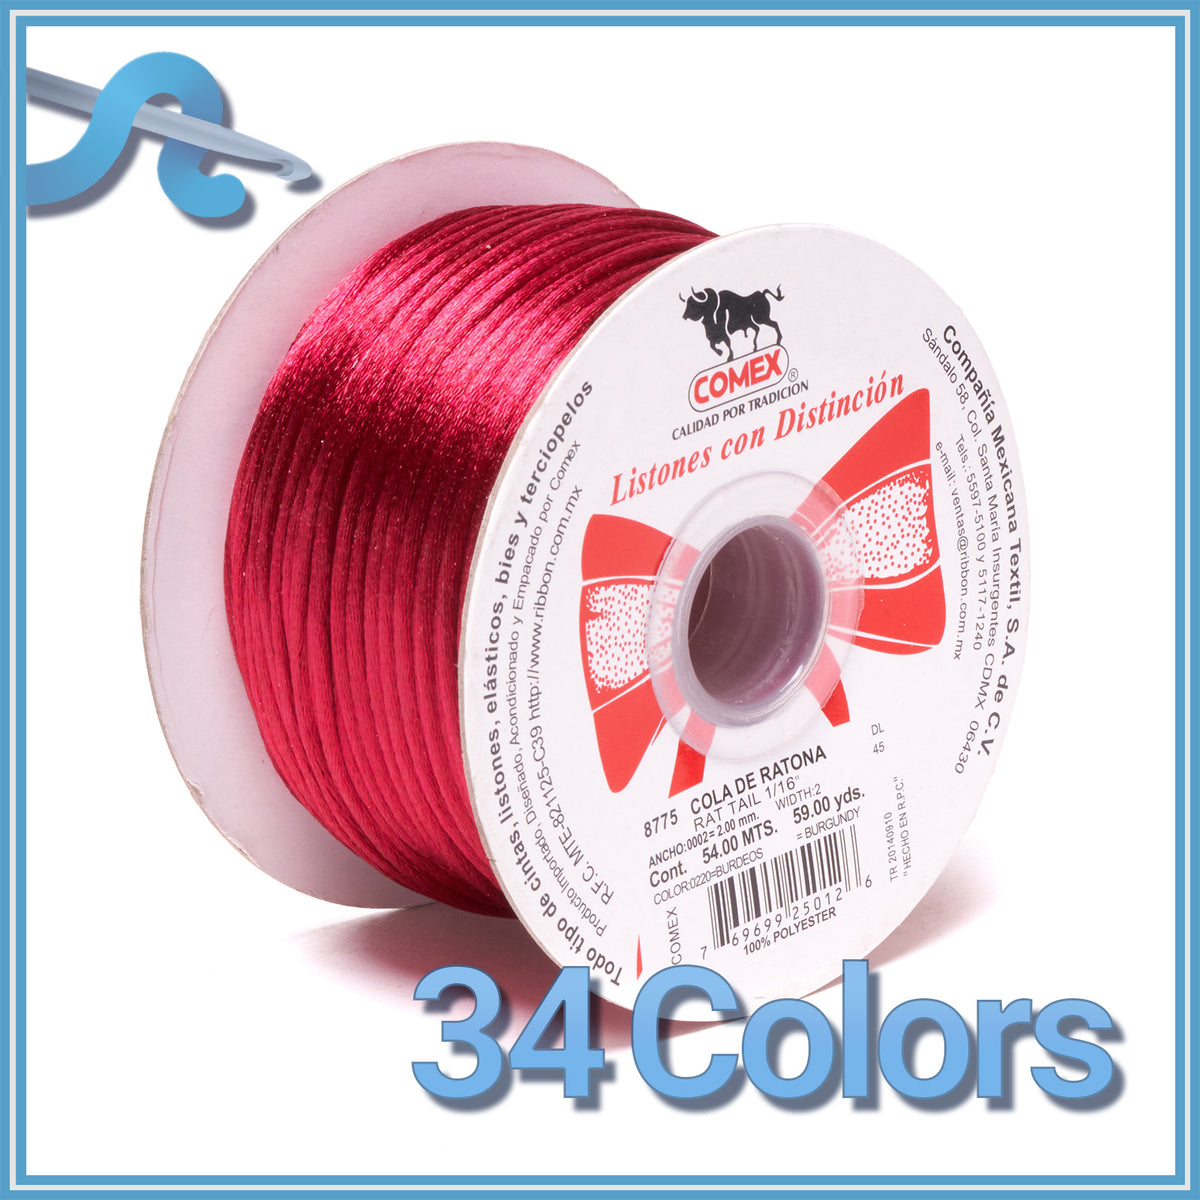 Agustina Accesorios - Hilo cola de ratón fino disponible en estos colores !  (Reposición de rojo, negro y blanco) Hace ya tu pedido !!